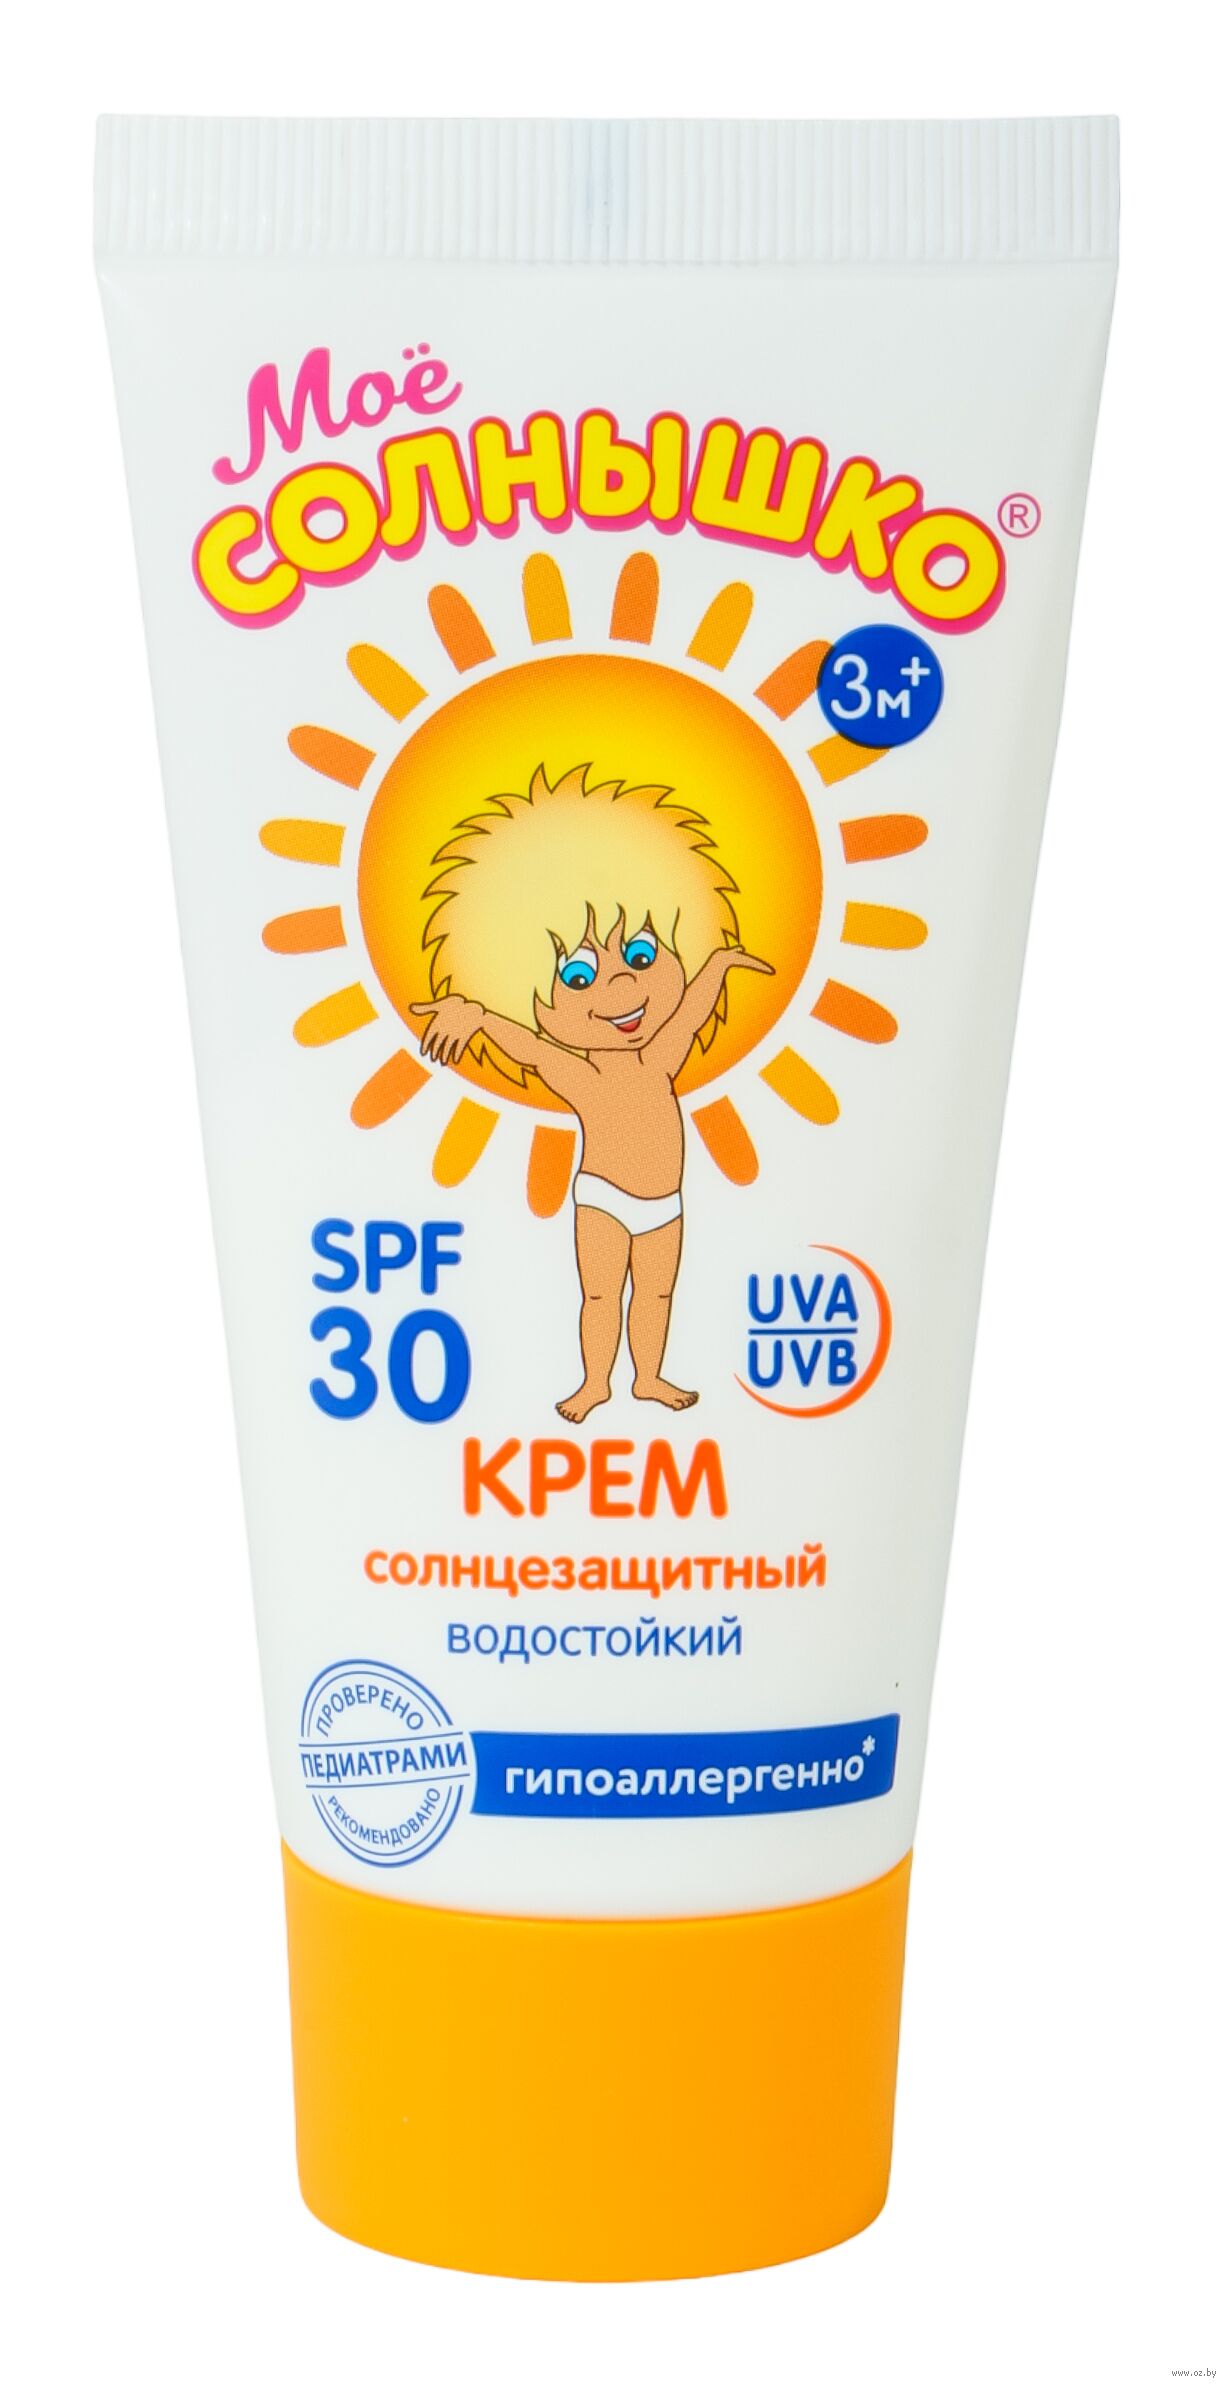 Солнцезащитный крем купить аптека. Моё солнышко детский солнцезащитный крем SPF 50. Мое солнышко крем детский солнцезащитный, SPF-30 / SPF-50, 55 мл. Мое солнышко крем солнцезащитный SPF 50. Моё солнышко детский солнцезащитный крем SPF 50 55 мл.